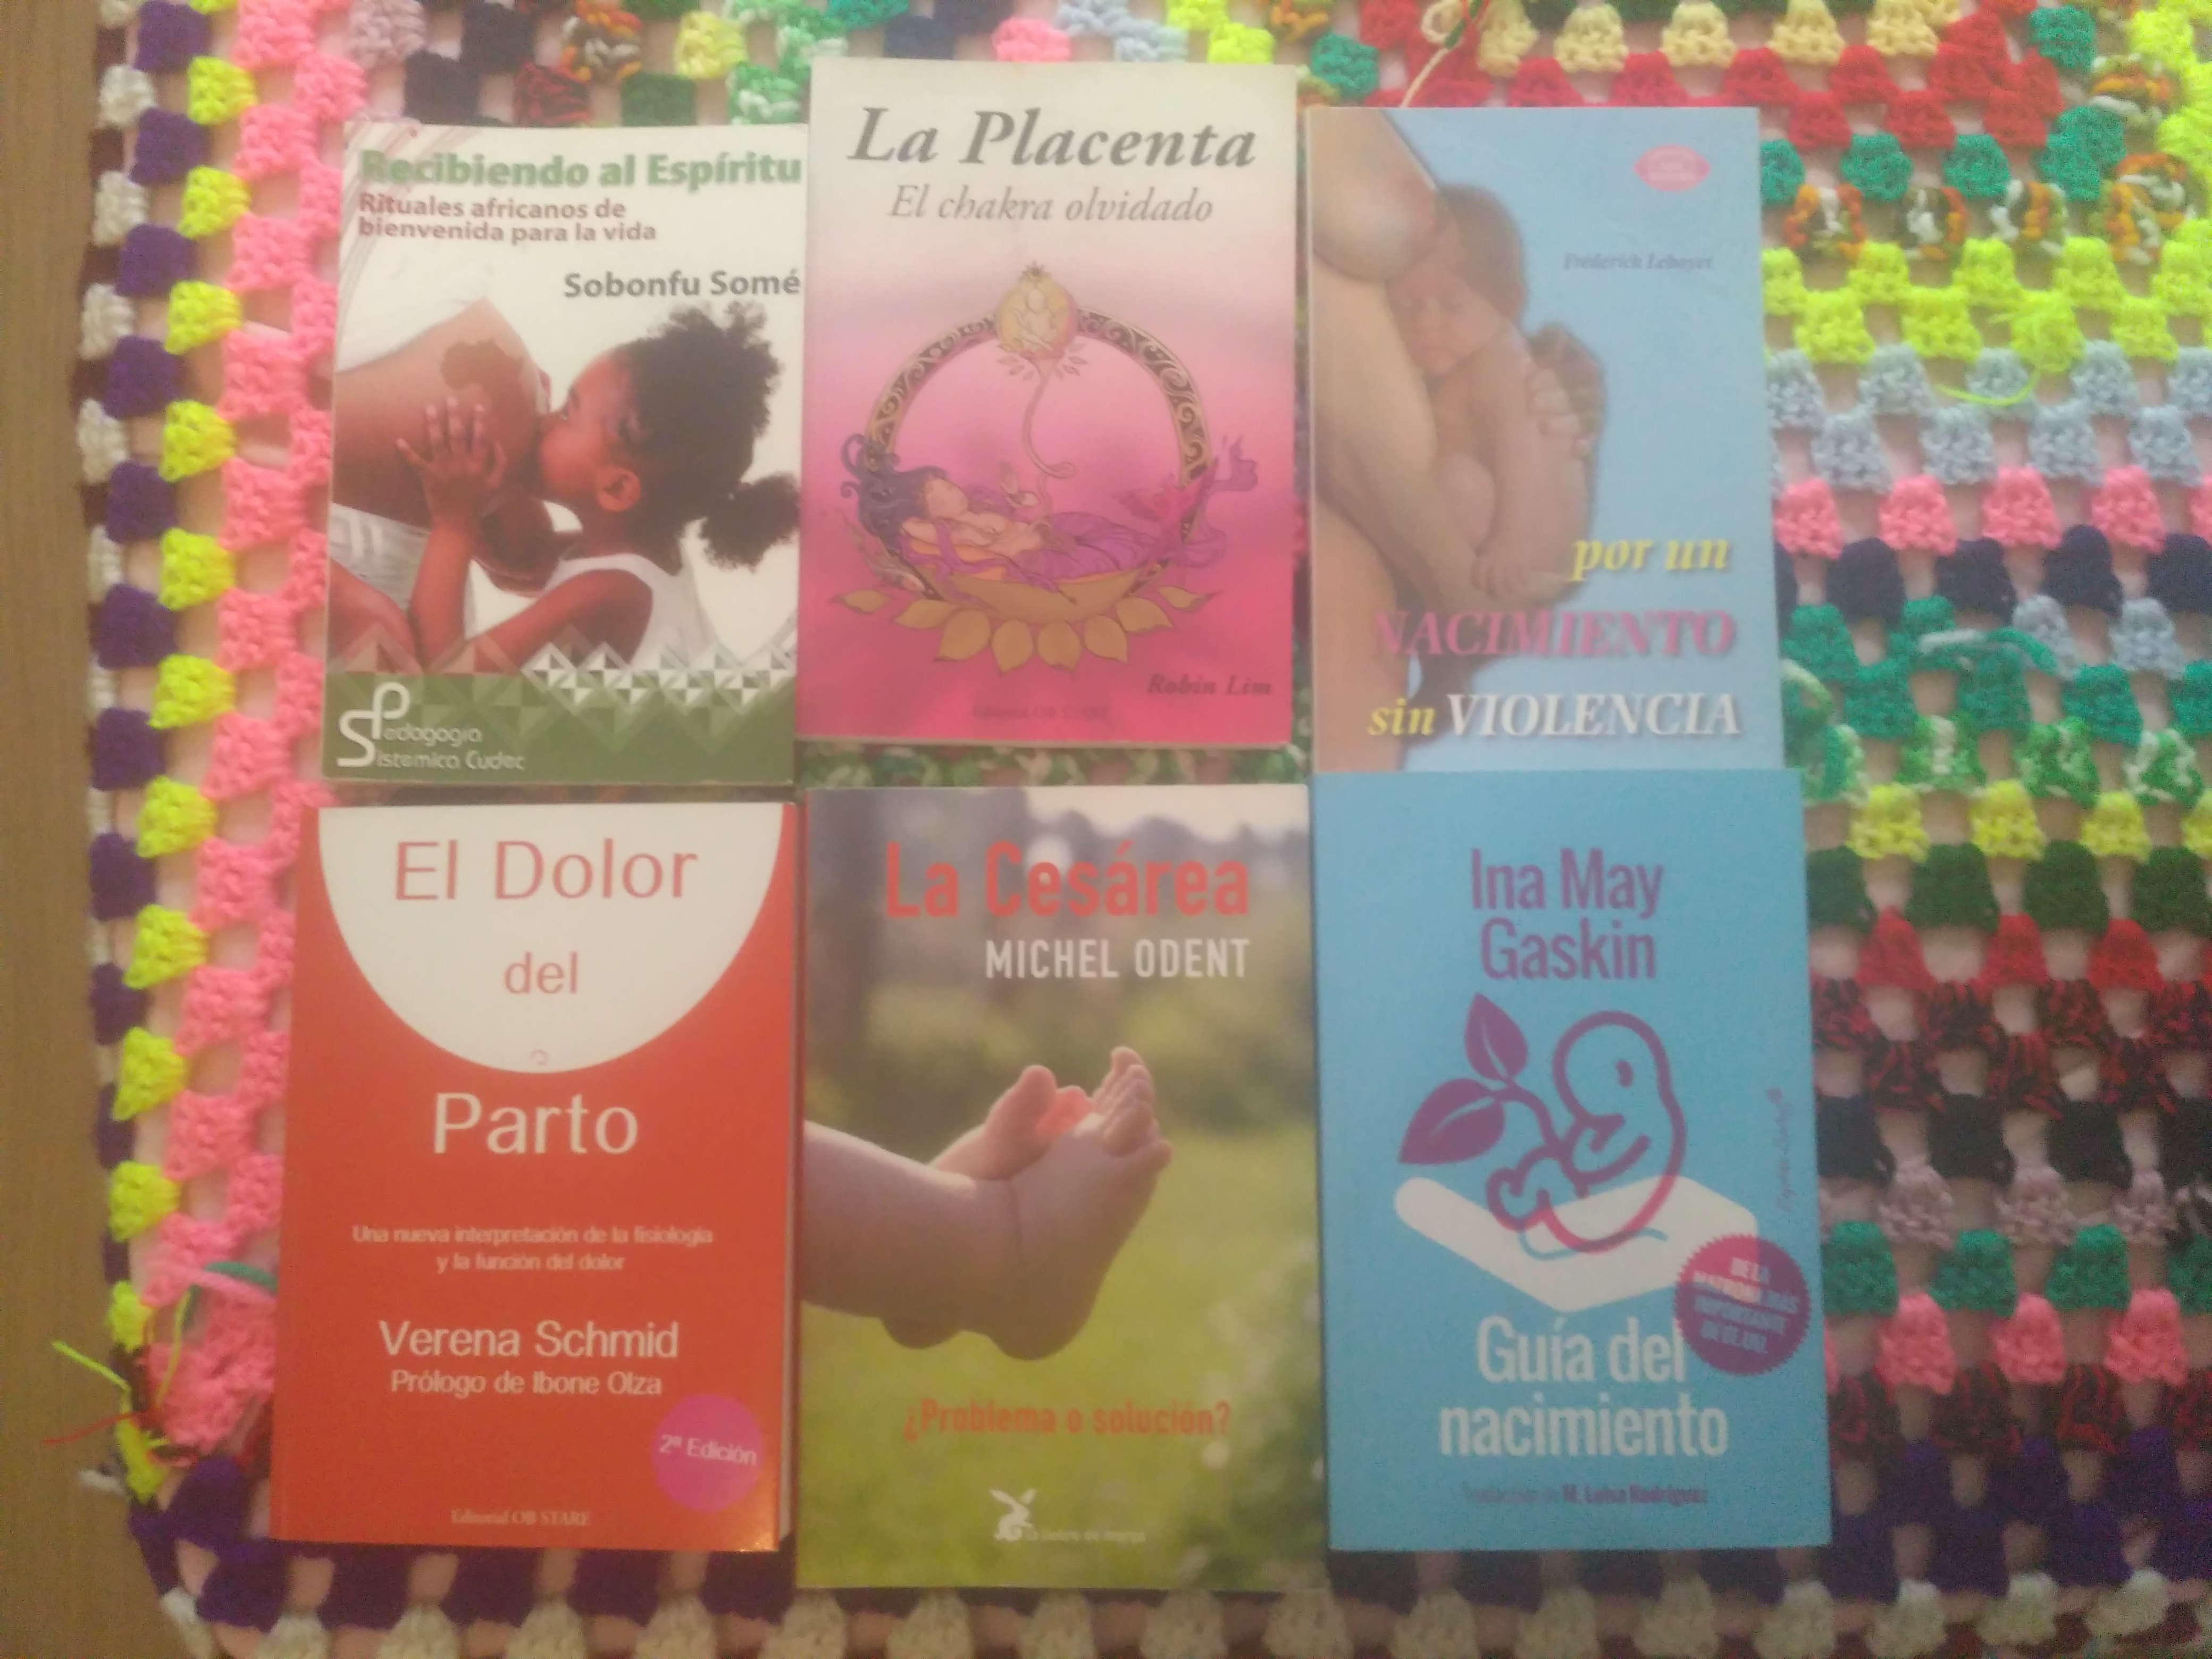 El dolor del parto (Spanish Edition) by Verena Schmid